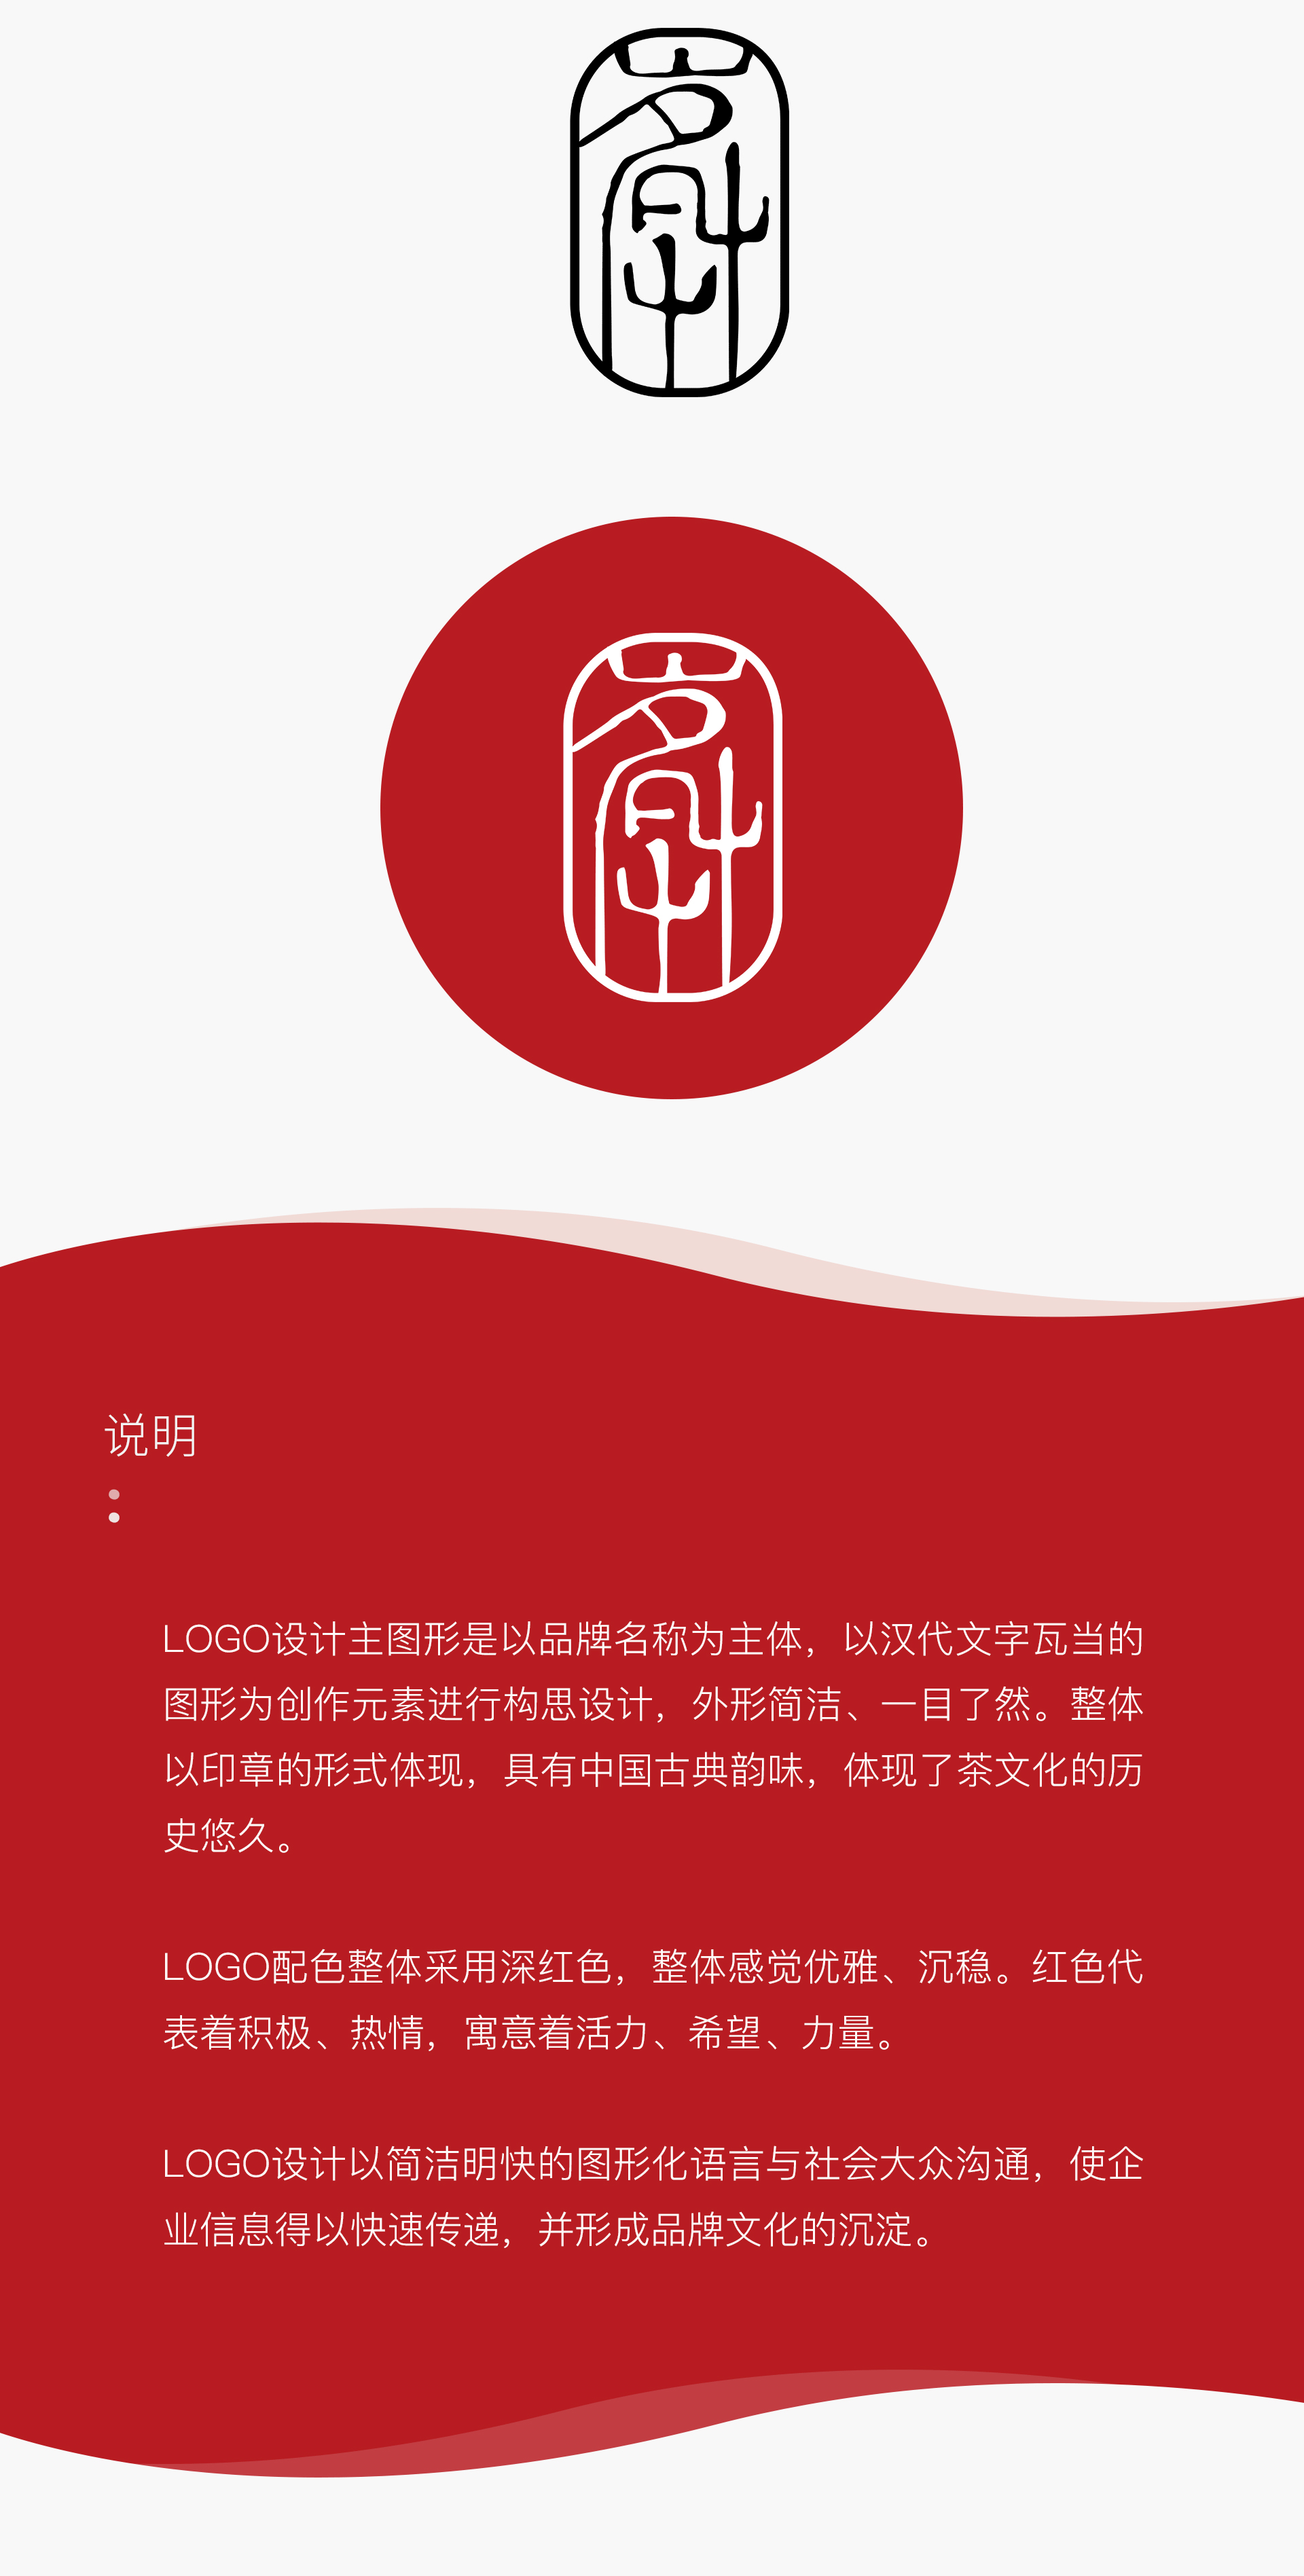 茗艸茶品牌logo设计